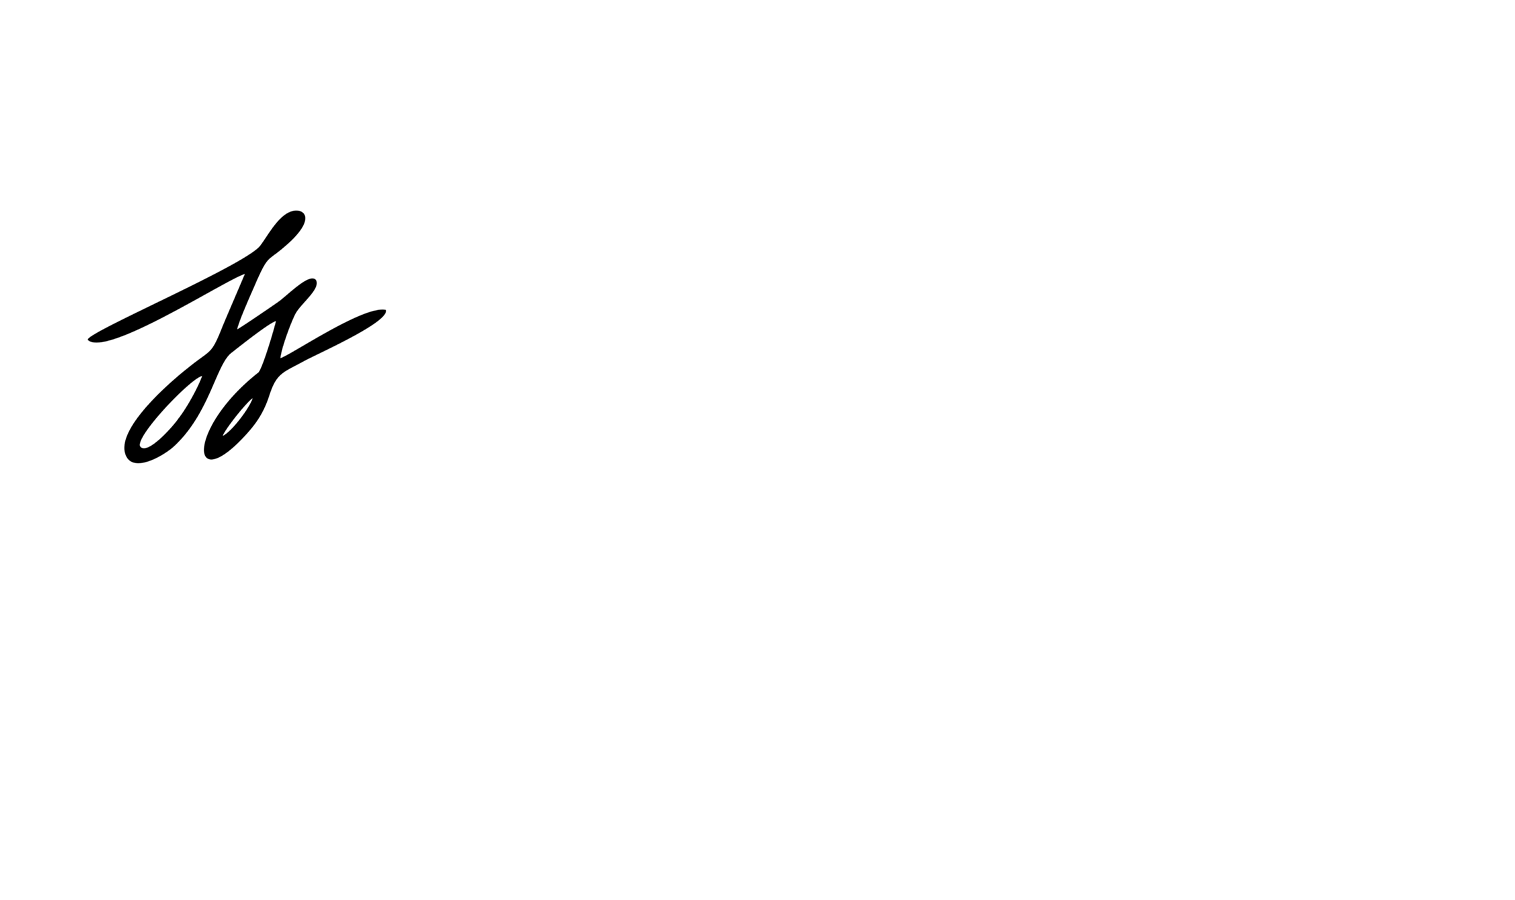 Taaja Tucker-Silva